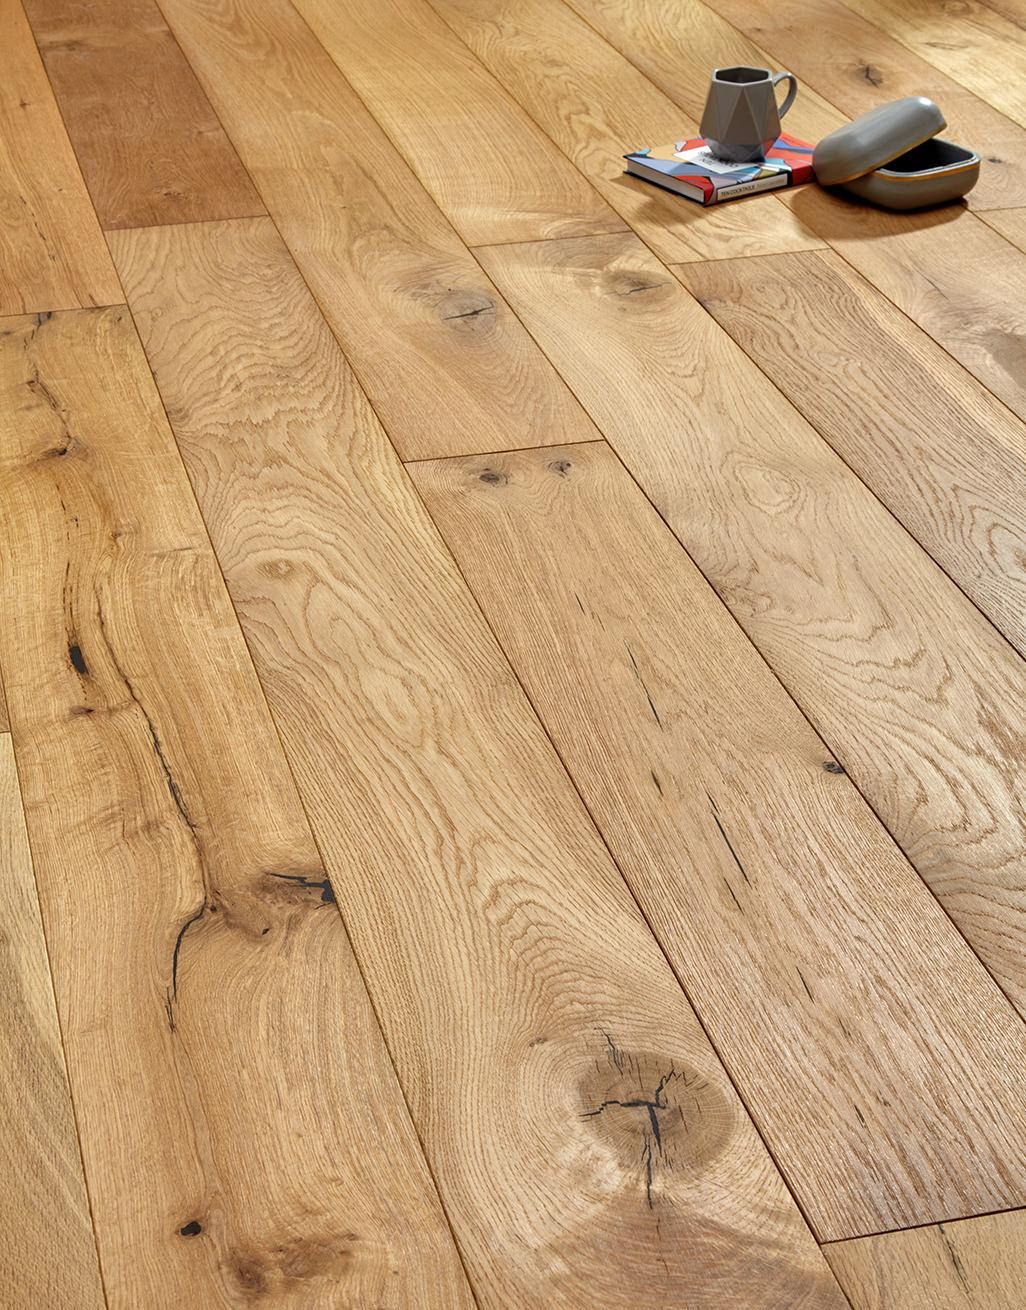 The steps involved in sanding wood floors